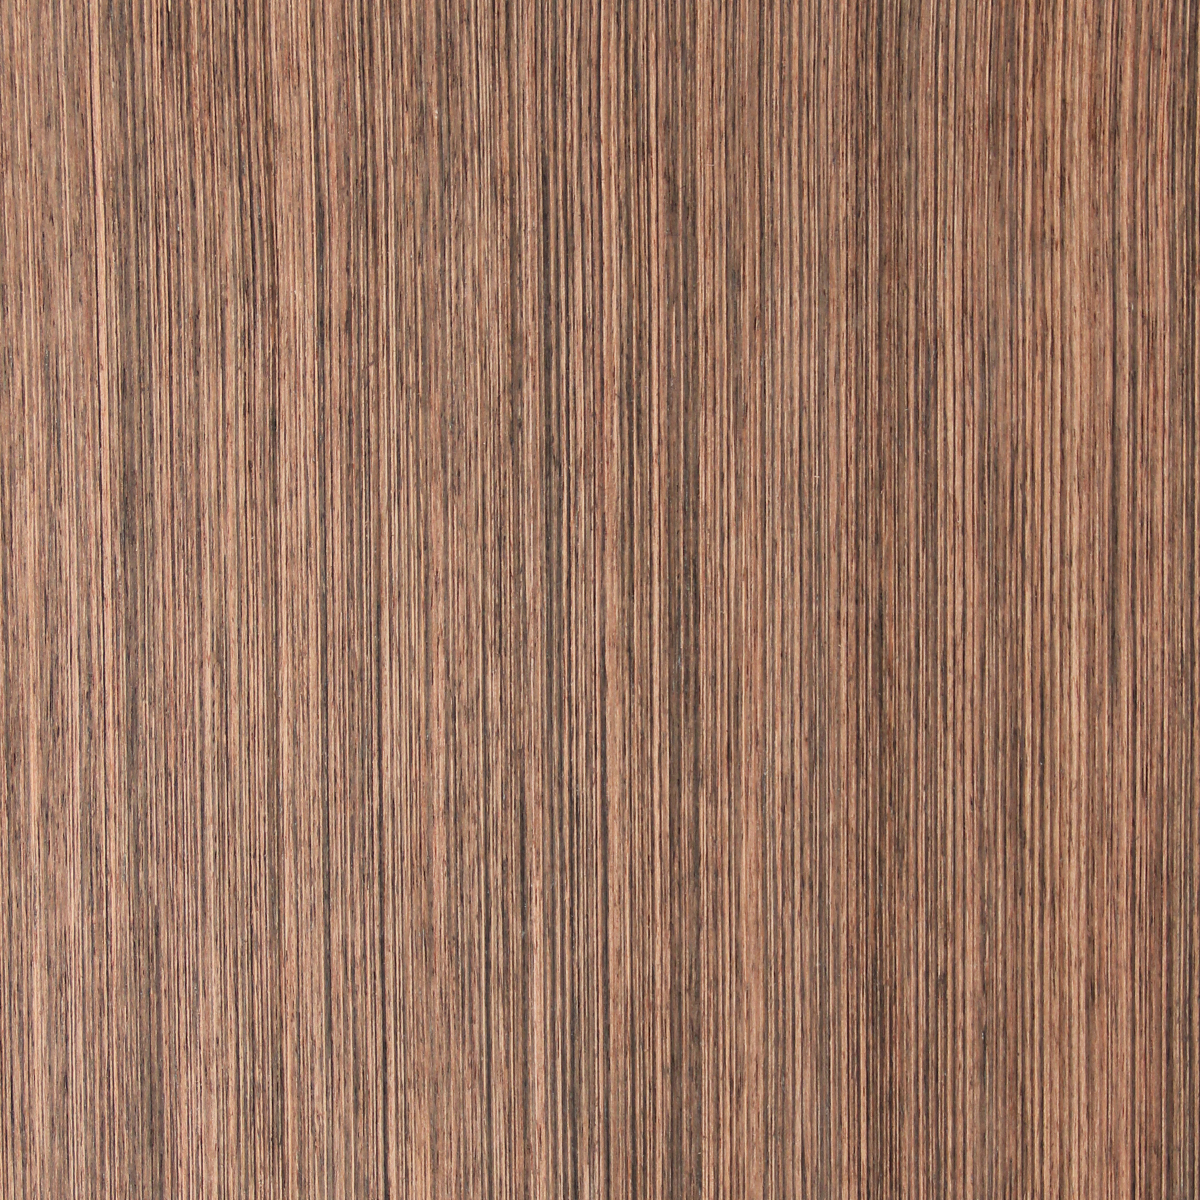 Ebony (Truewood) - Timber Veneer & Plywood Species